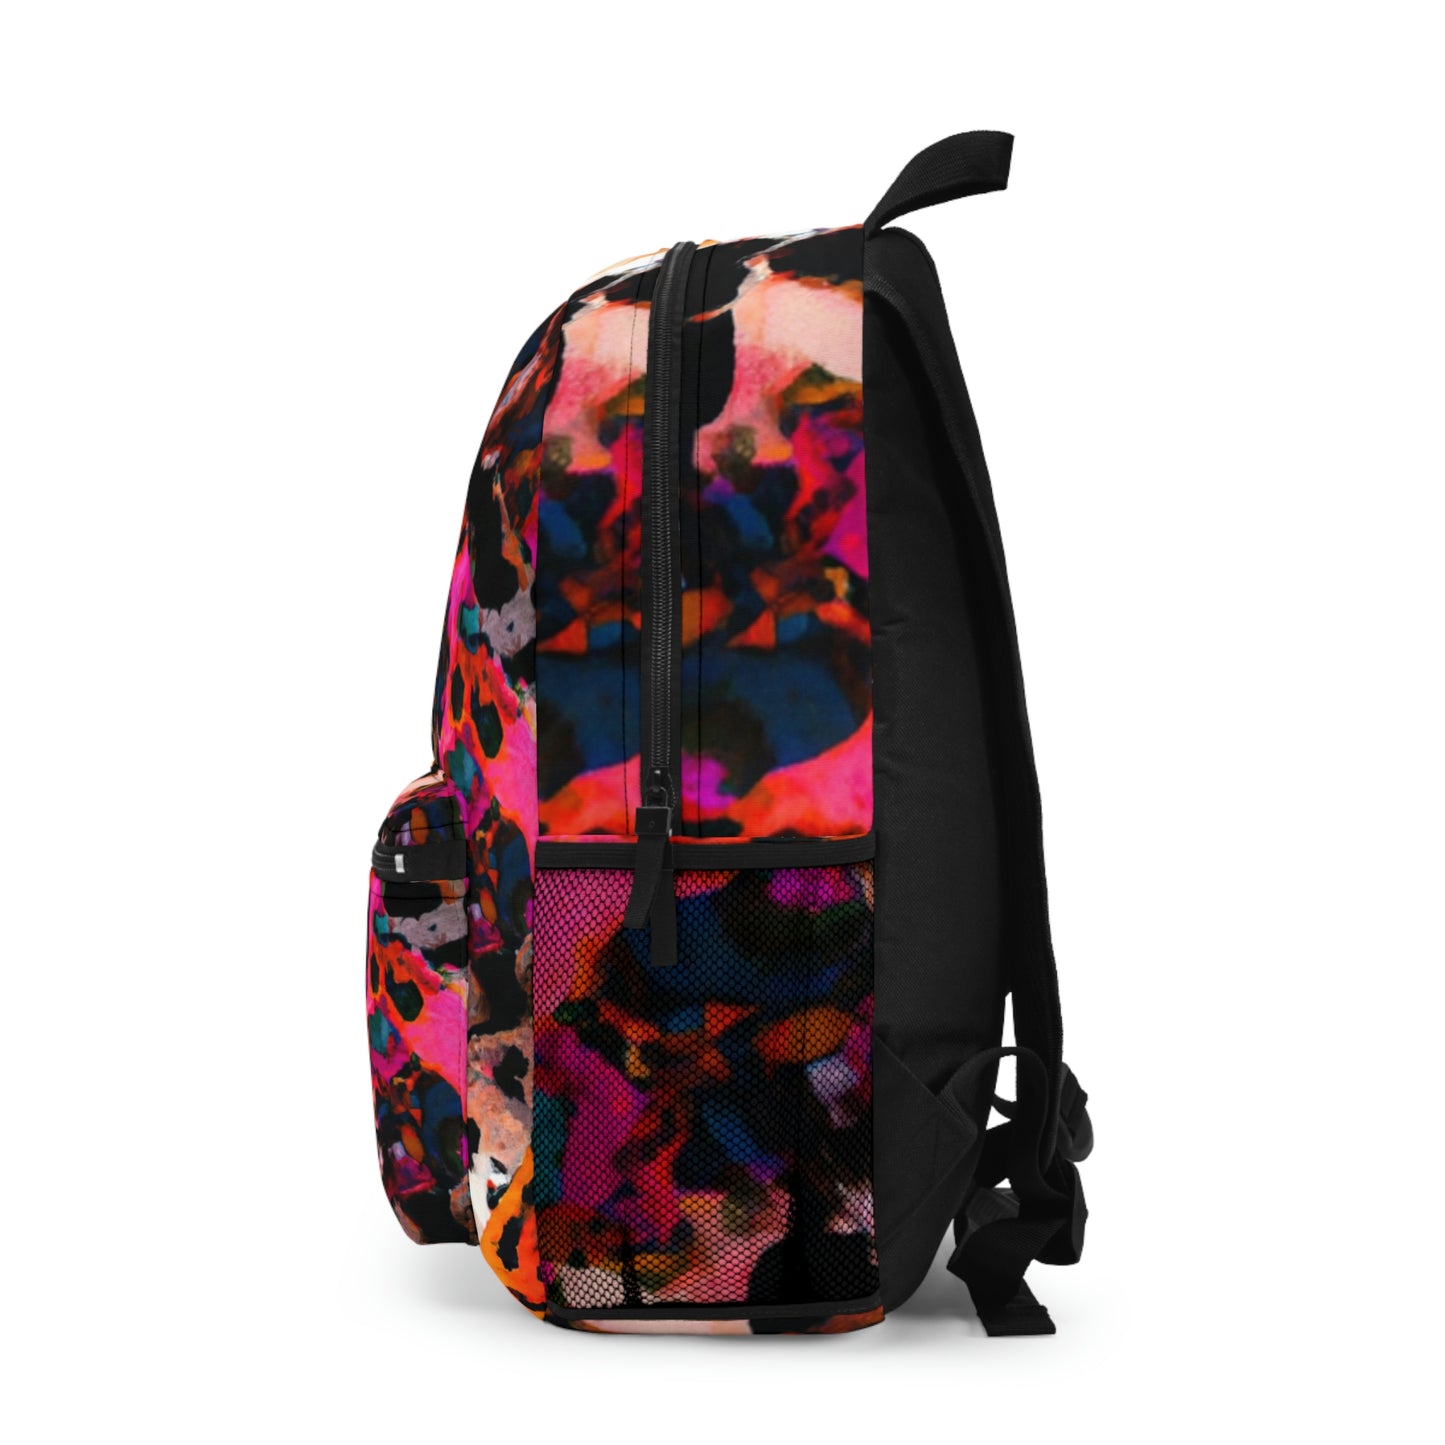 Kryto Bloom Backpack